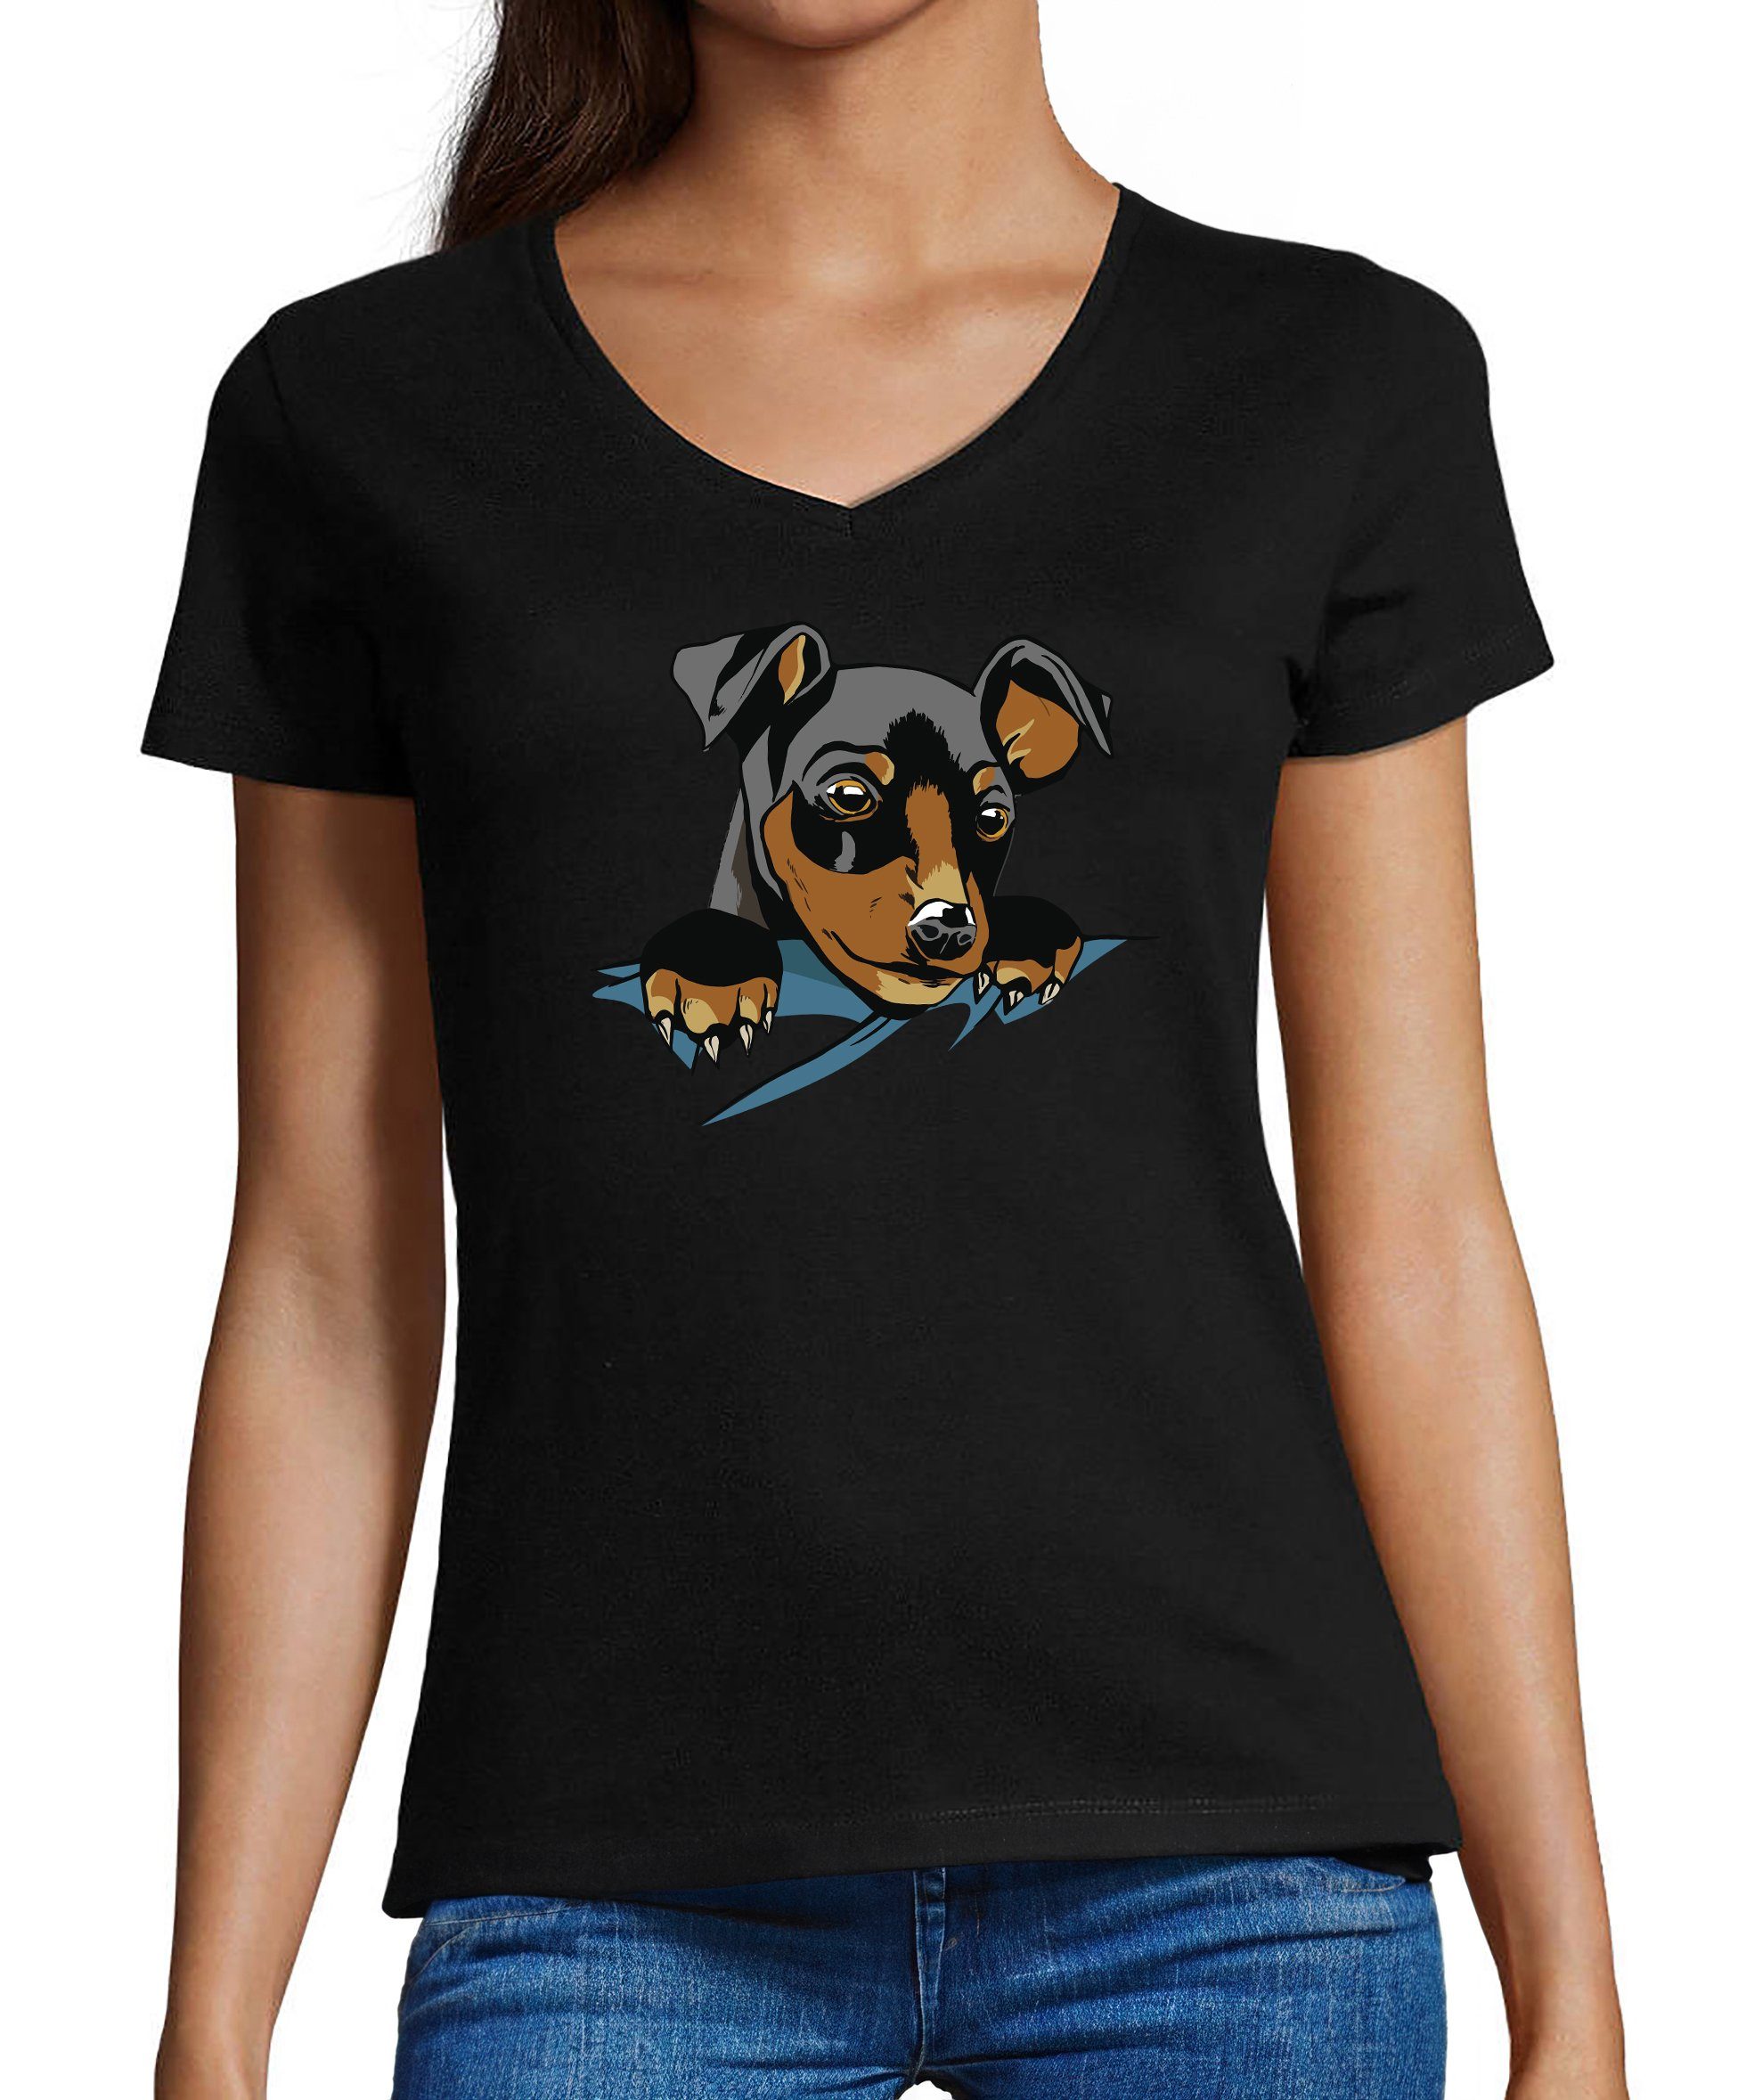 MyDesign24 T-Shirt Damen Hunde Print Shirt bedruckt - Süßer Hundewelpe V-Ausschnitt Baumwollshirt mit Aufdruck, Slim Fit, i227 schwarz